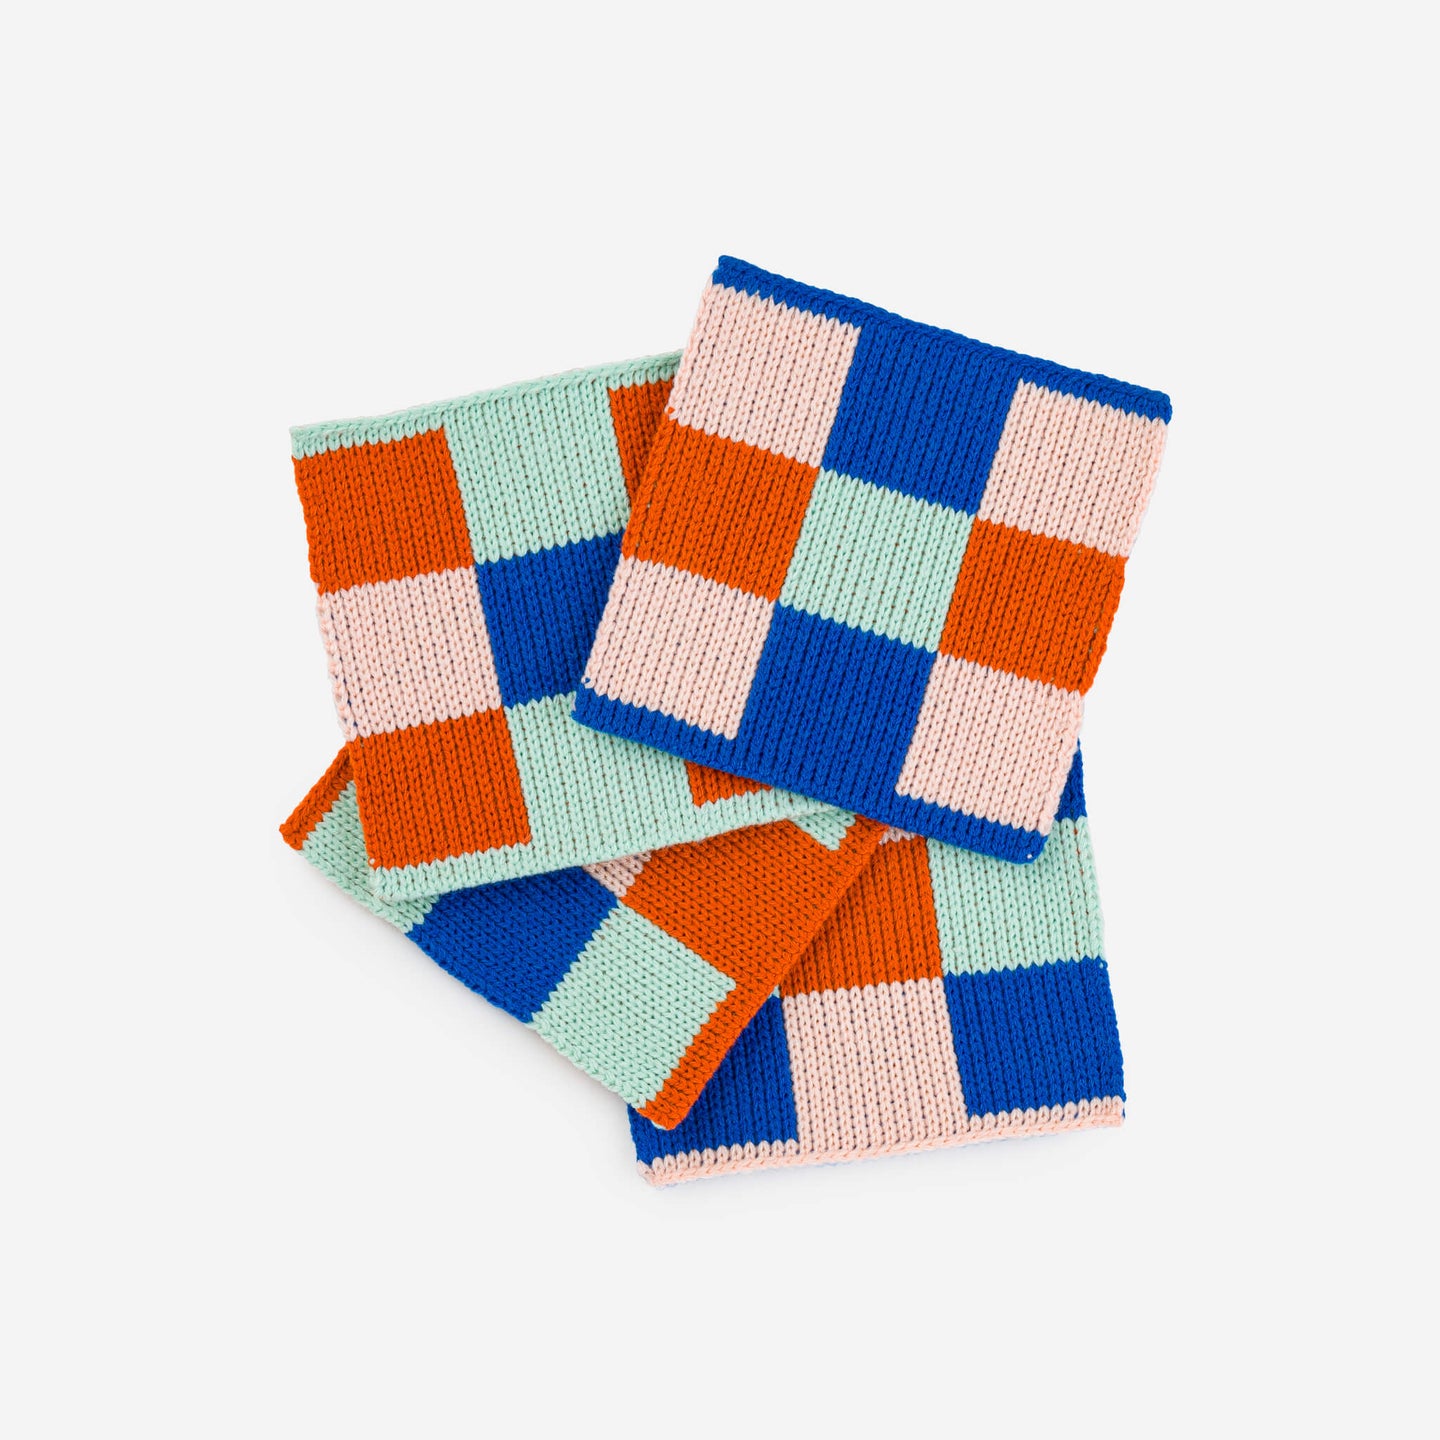 Square Square Soft Fabric Knit Coasters Non Scratch Checkerboard